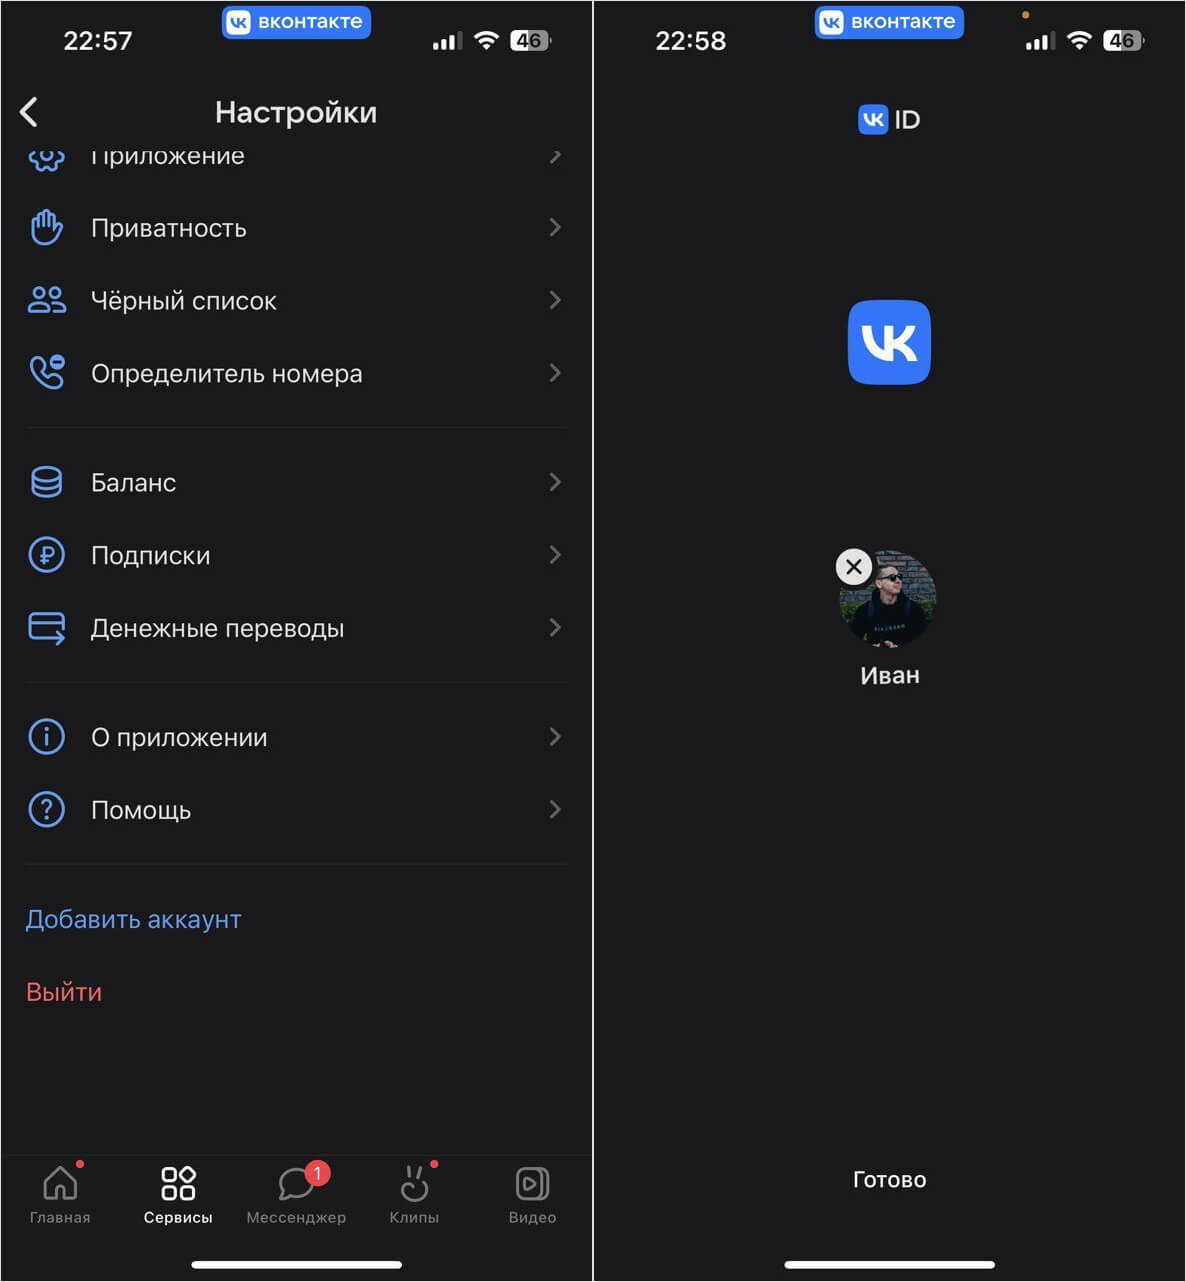 Почему не работает Вконтакте? Что делать?